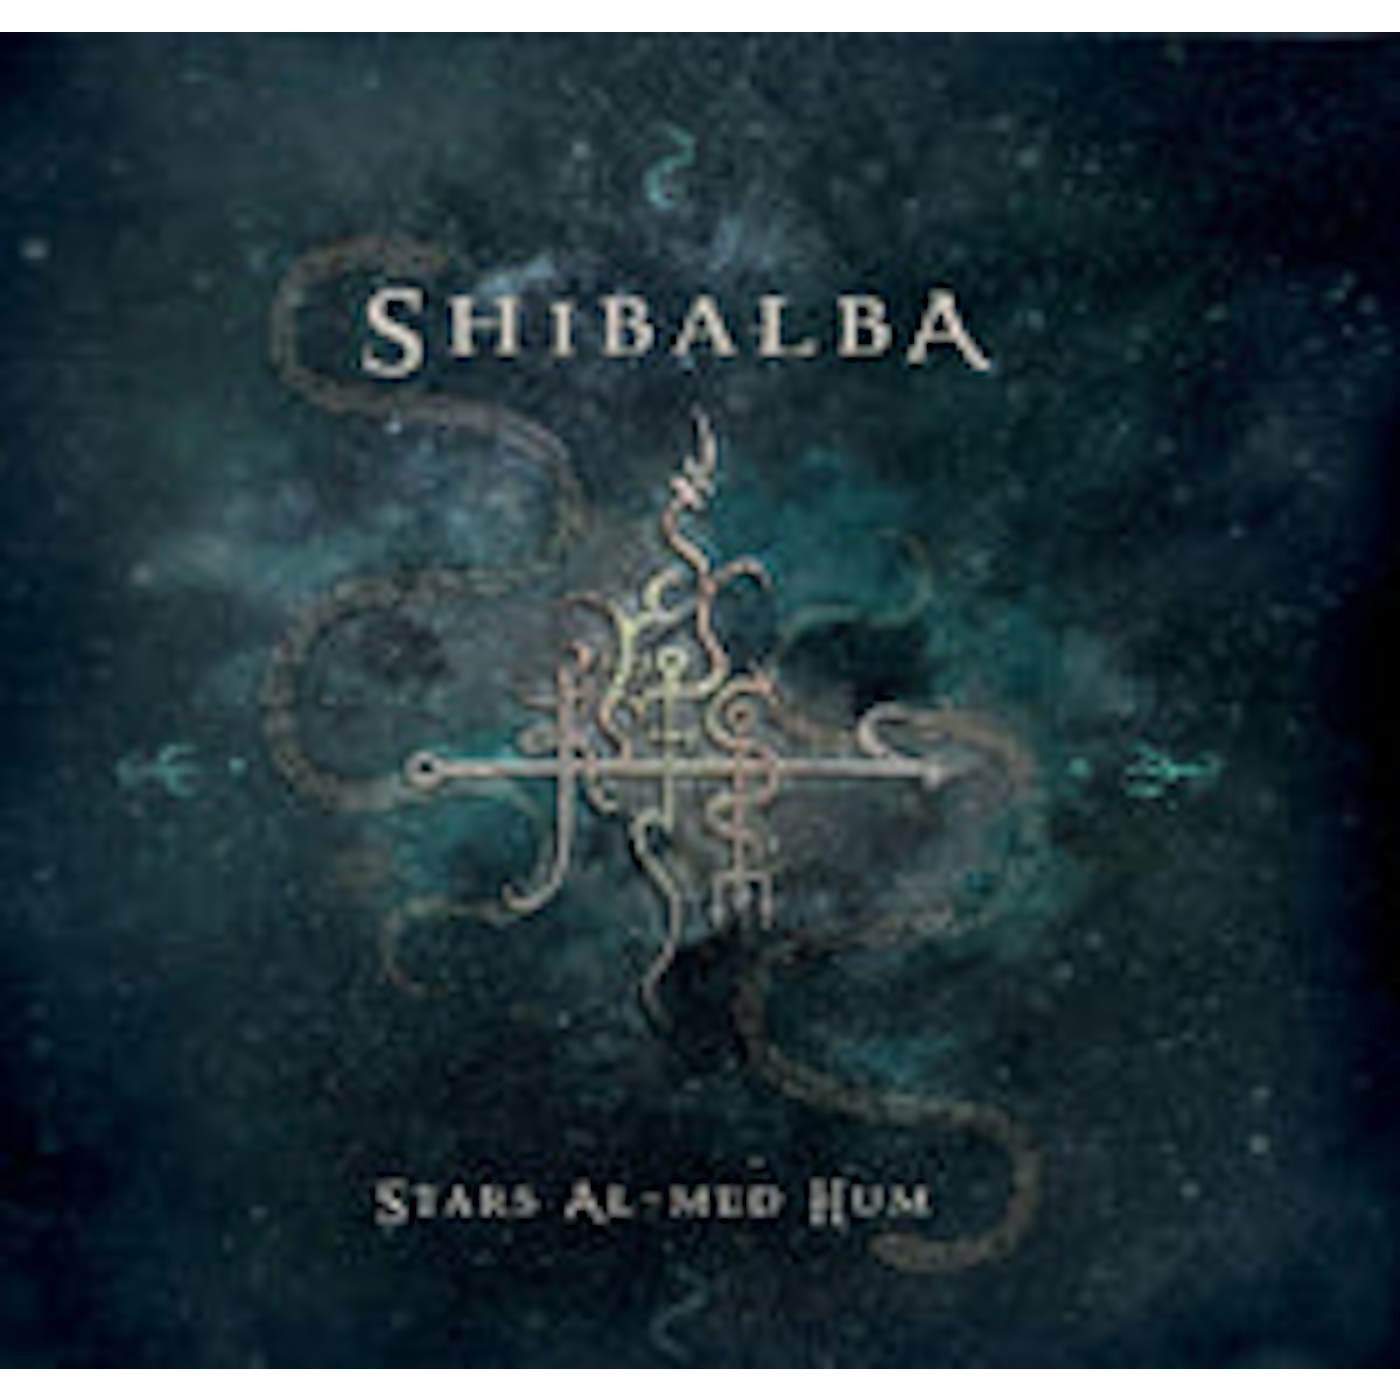 Shibalba LP - Stars Al-Med Hum (Vinyl)